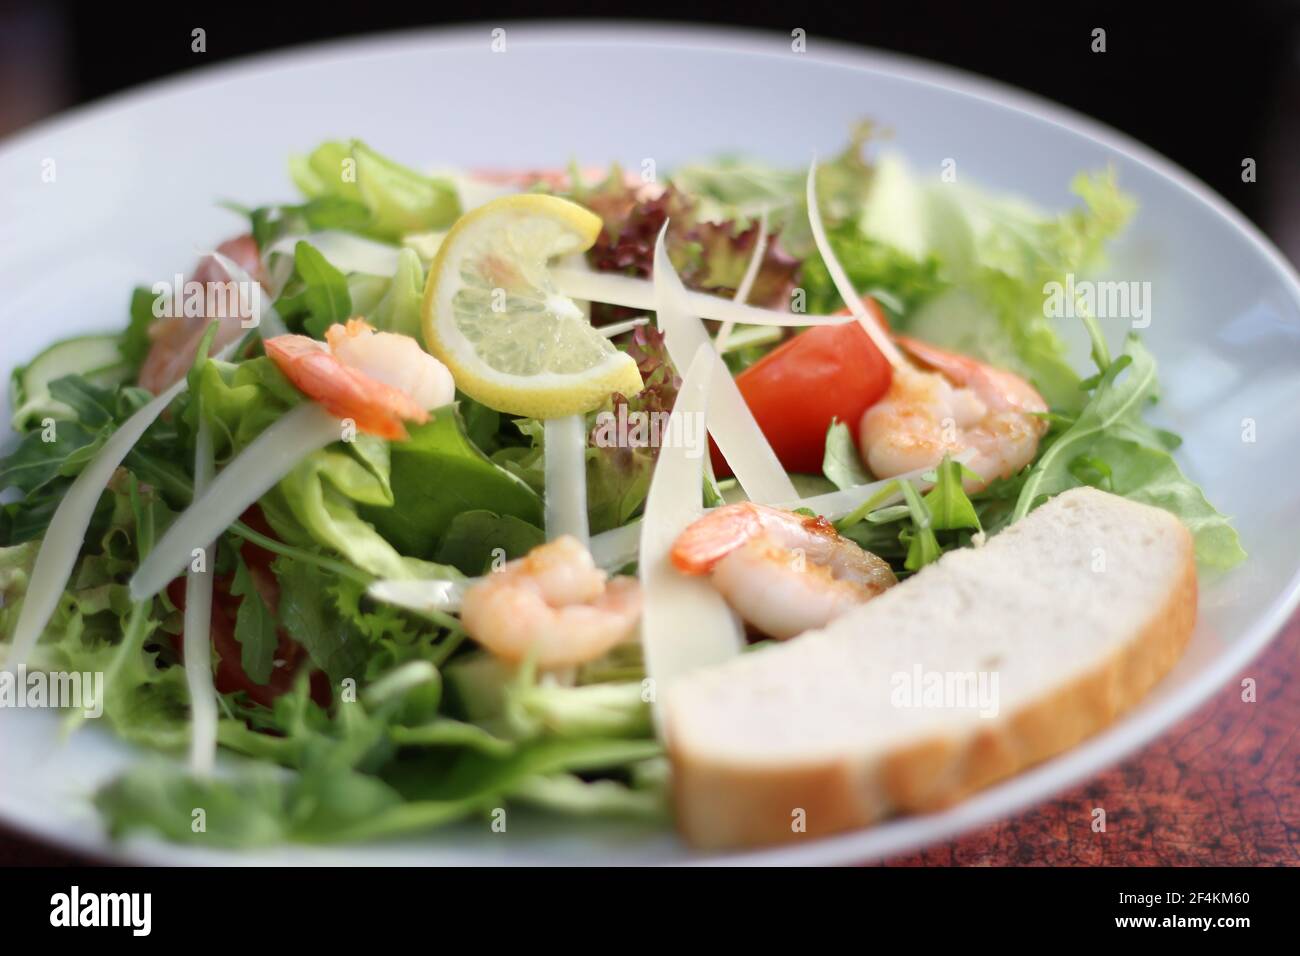 Cibo del ristorante - insalata con ingredienti freschi Foto Stock